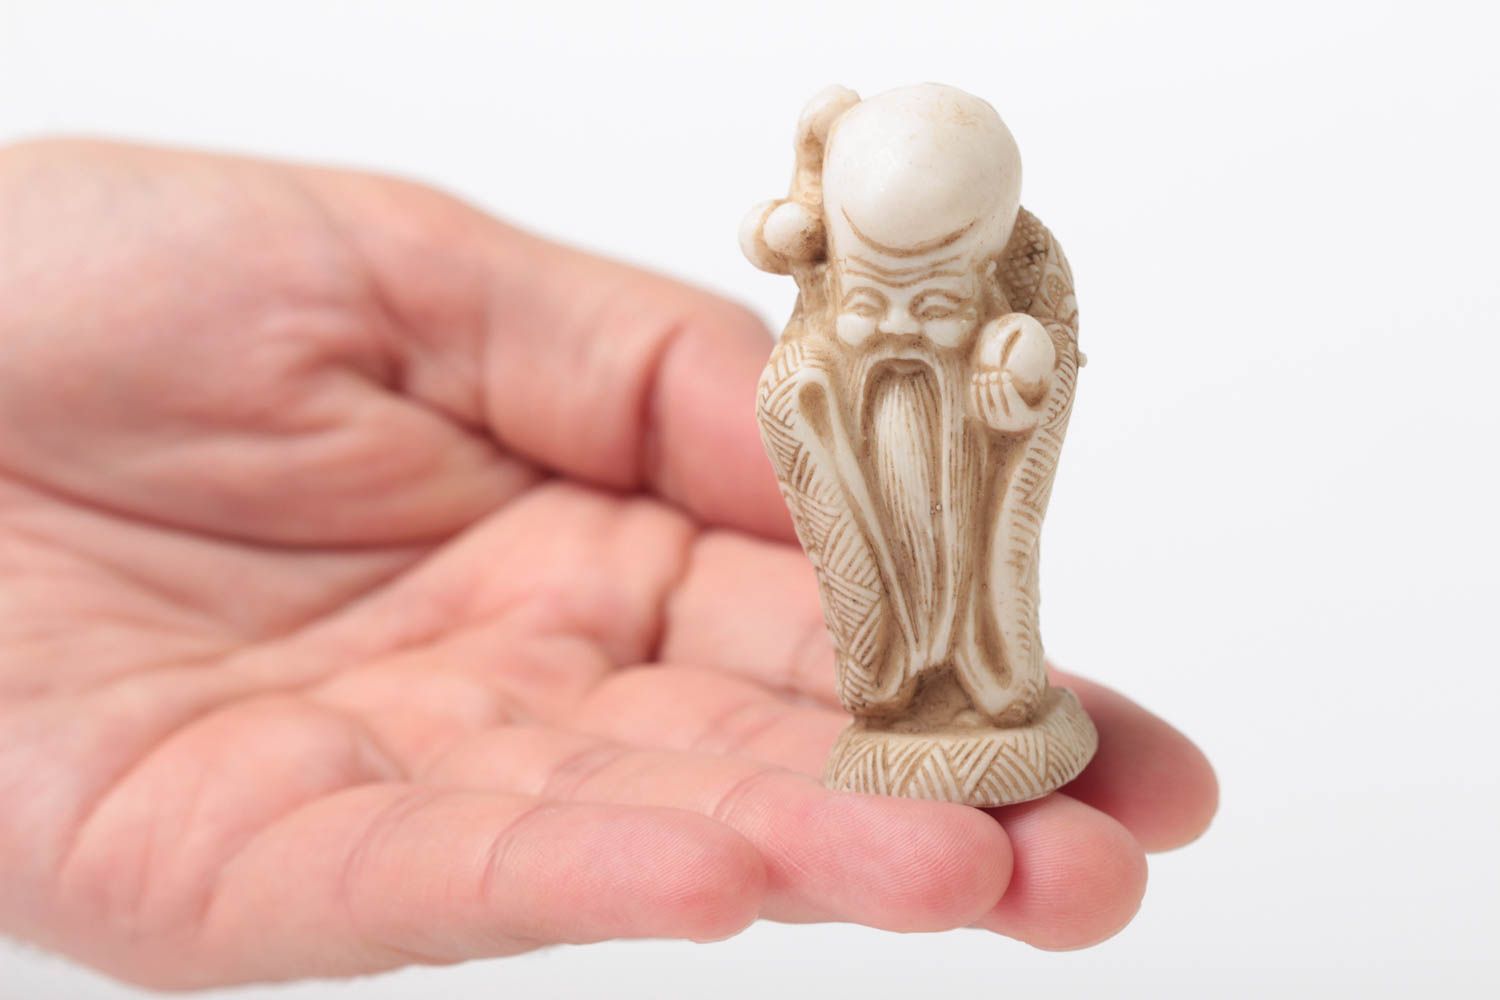 Statuetta piccola fatta a mano figurina decorativa in polvere di marmo foto 5